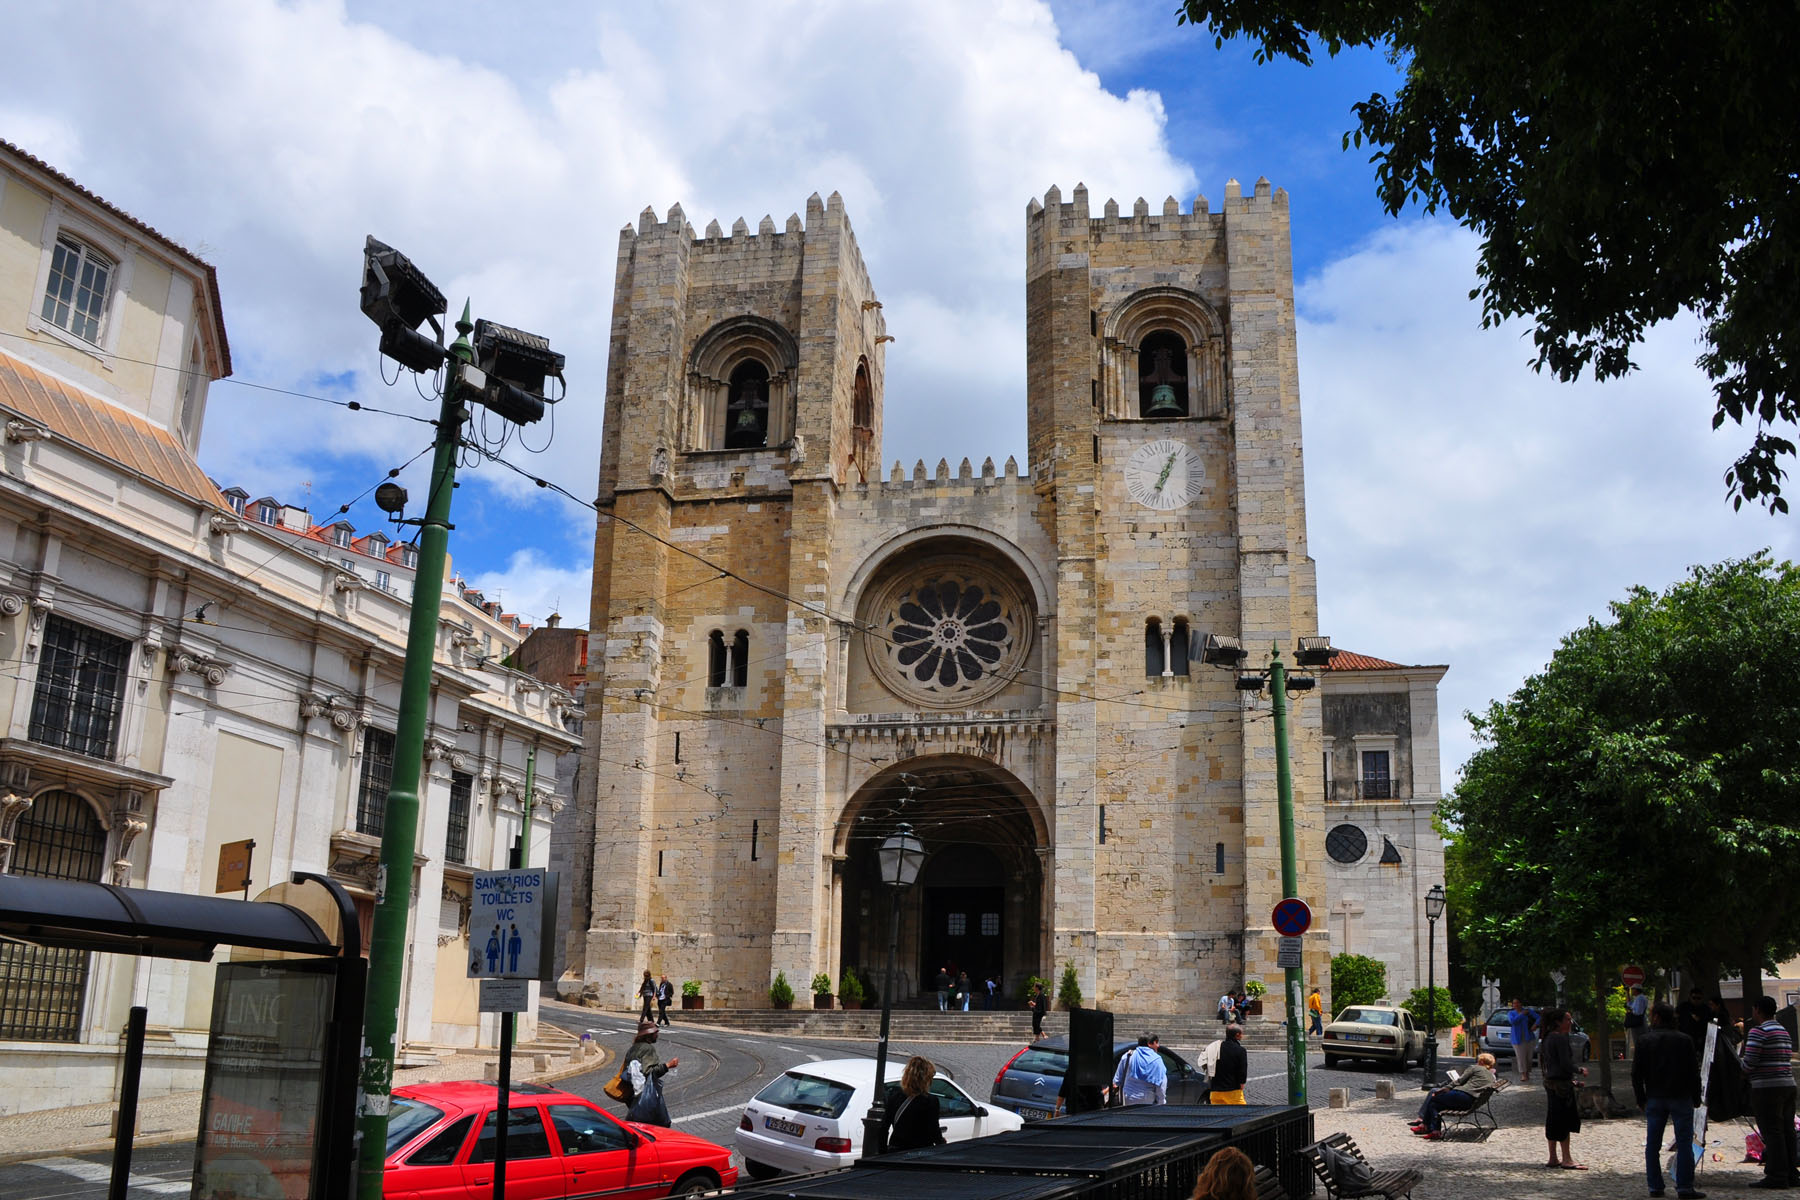 Kathedraal van Lissabon (Santa Maria Maior)